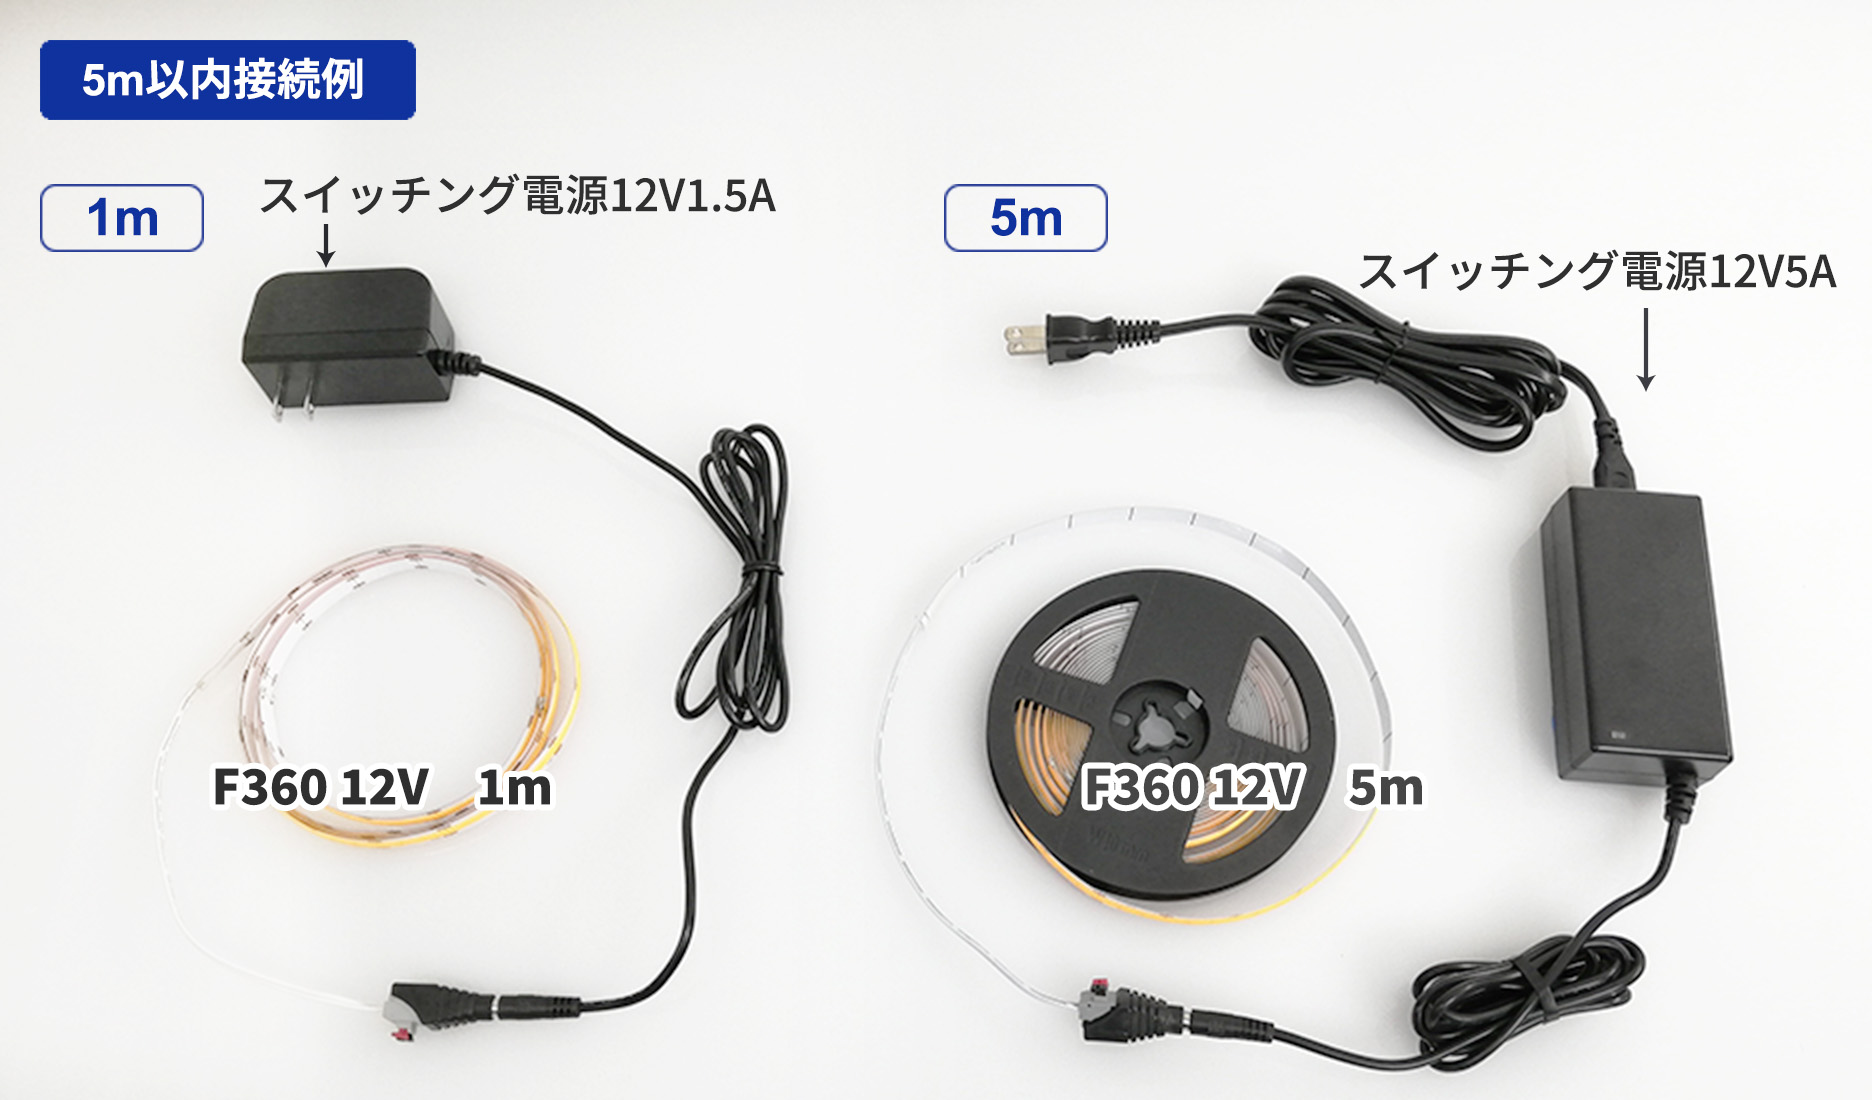 LEDラインテープと電源の簡単接続構成